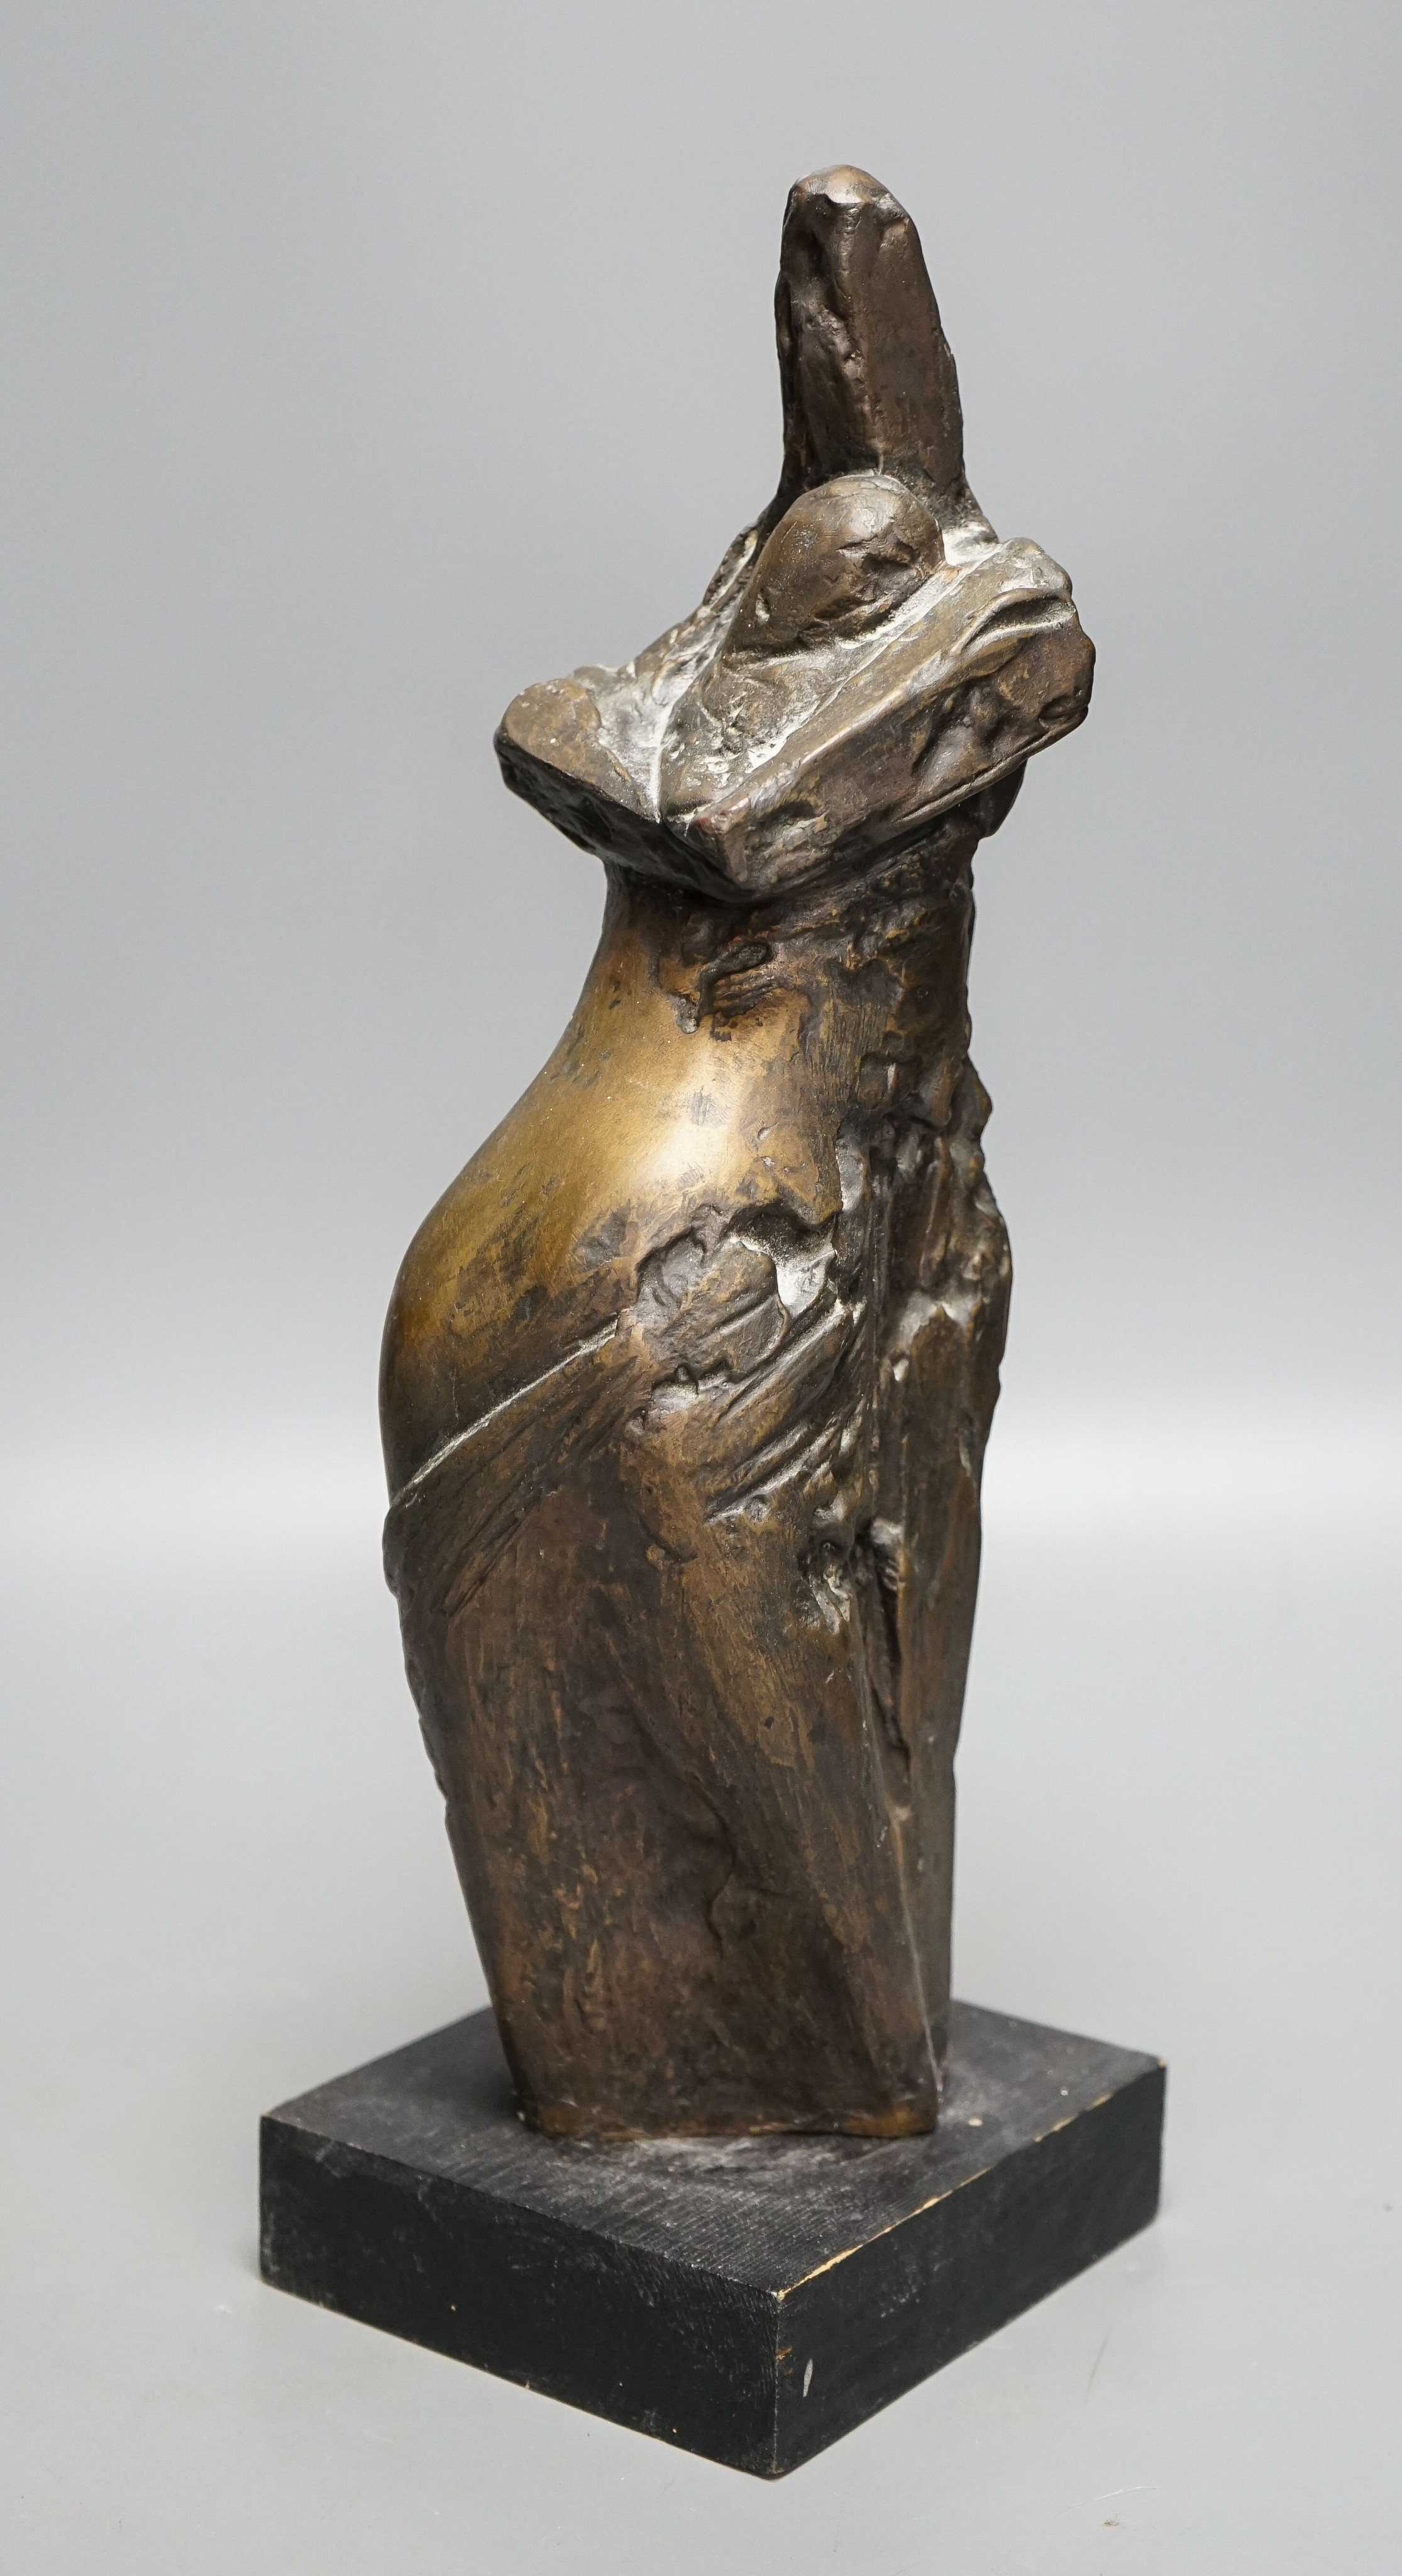 Tissa?, an abstract bronze figure 40cm